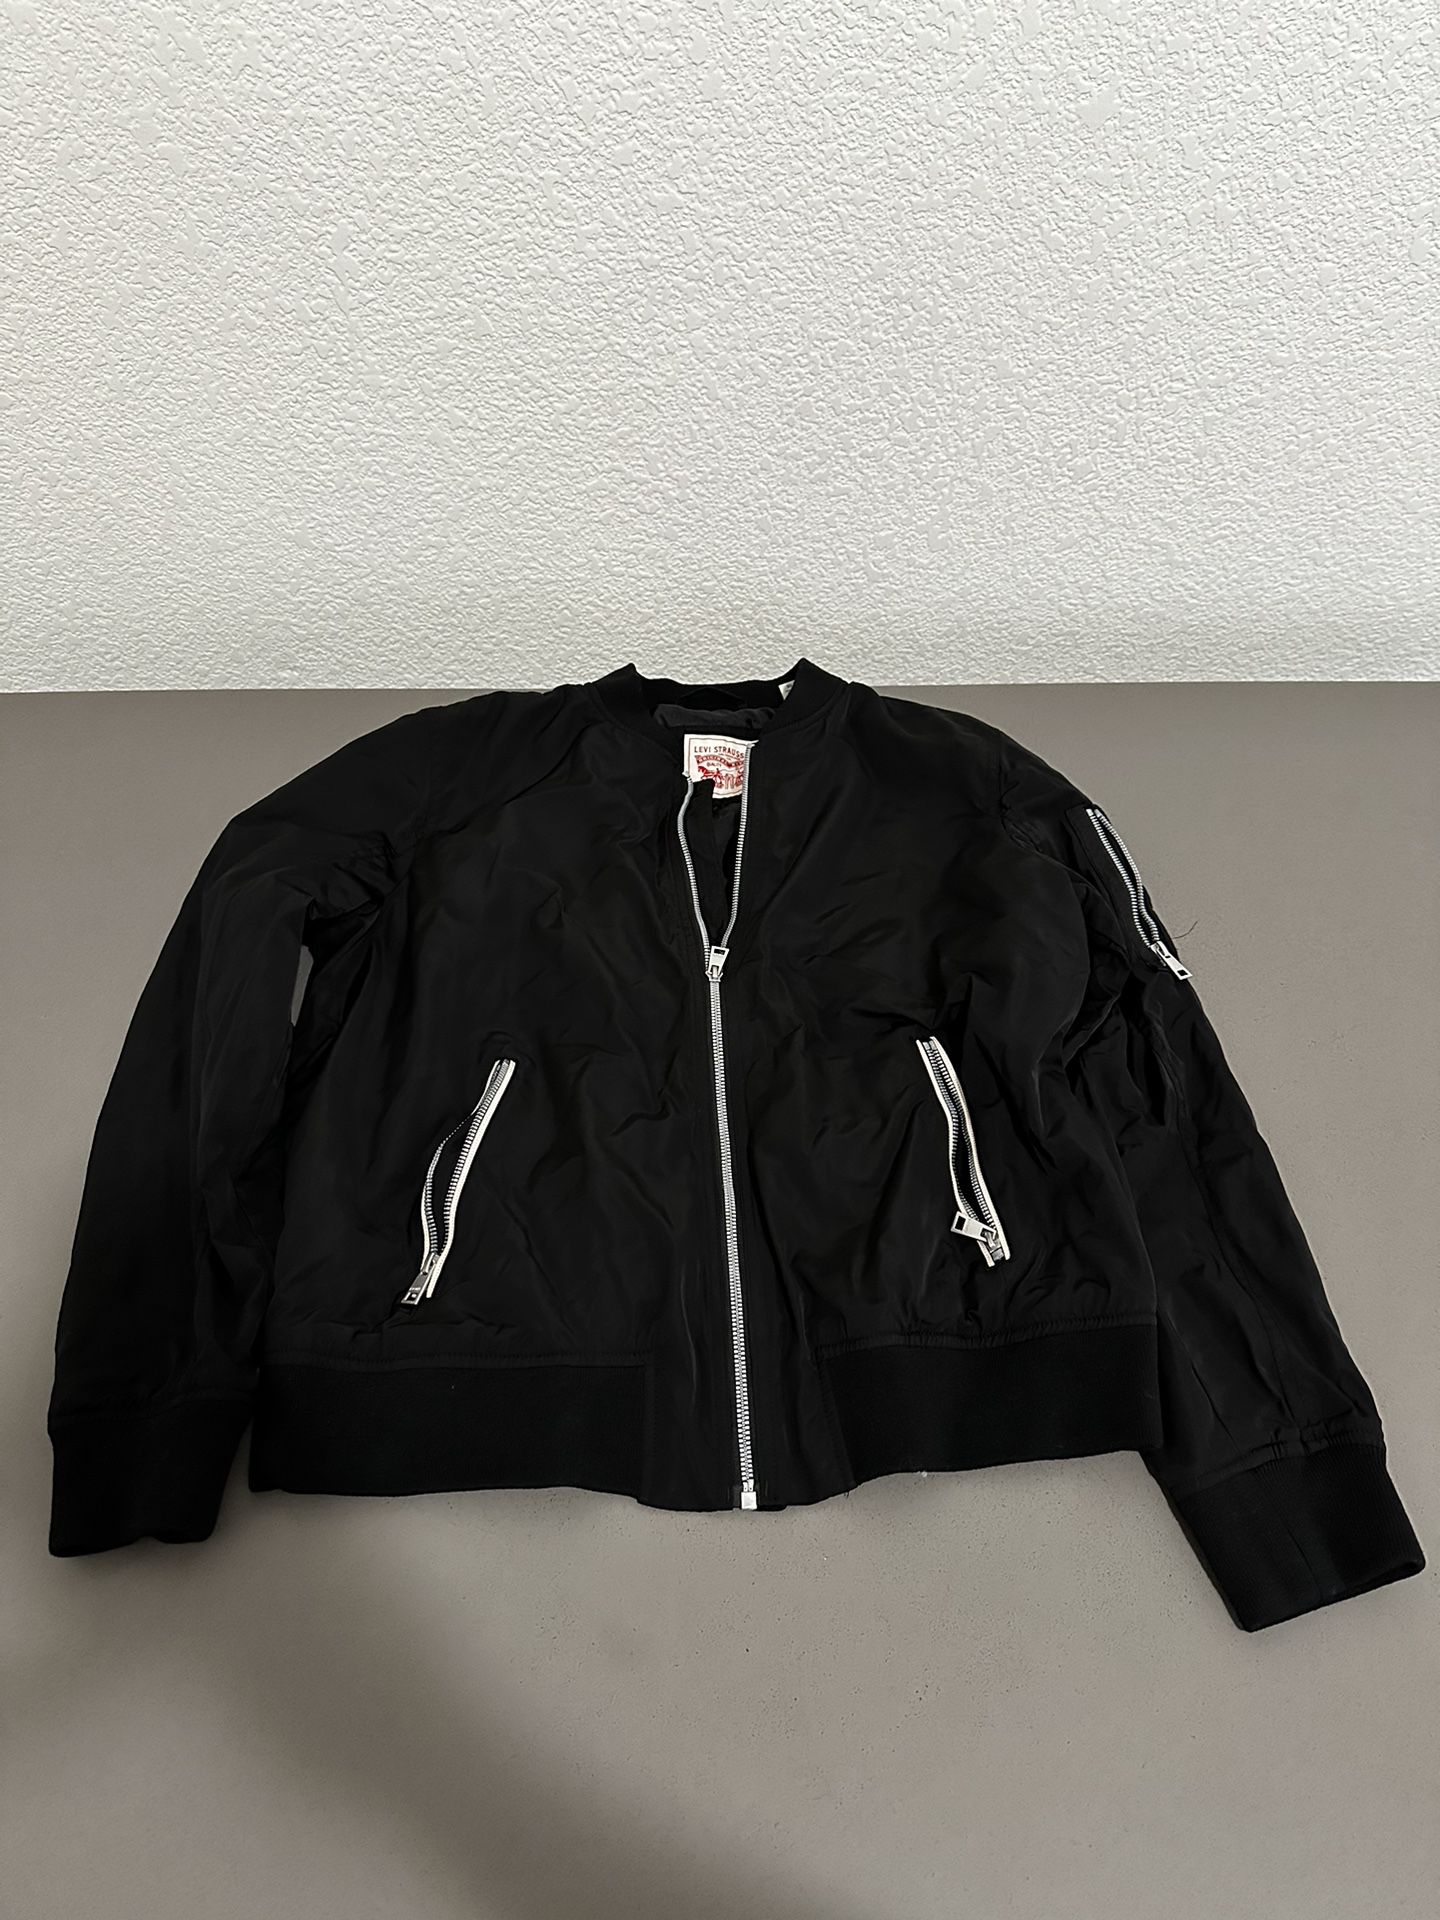 Women’s Levi’s Bomber Jacket Size XL